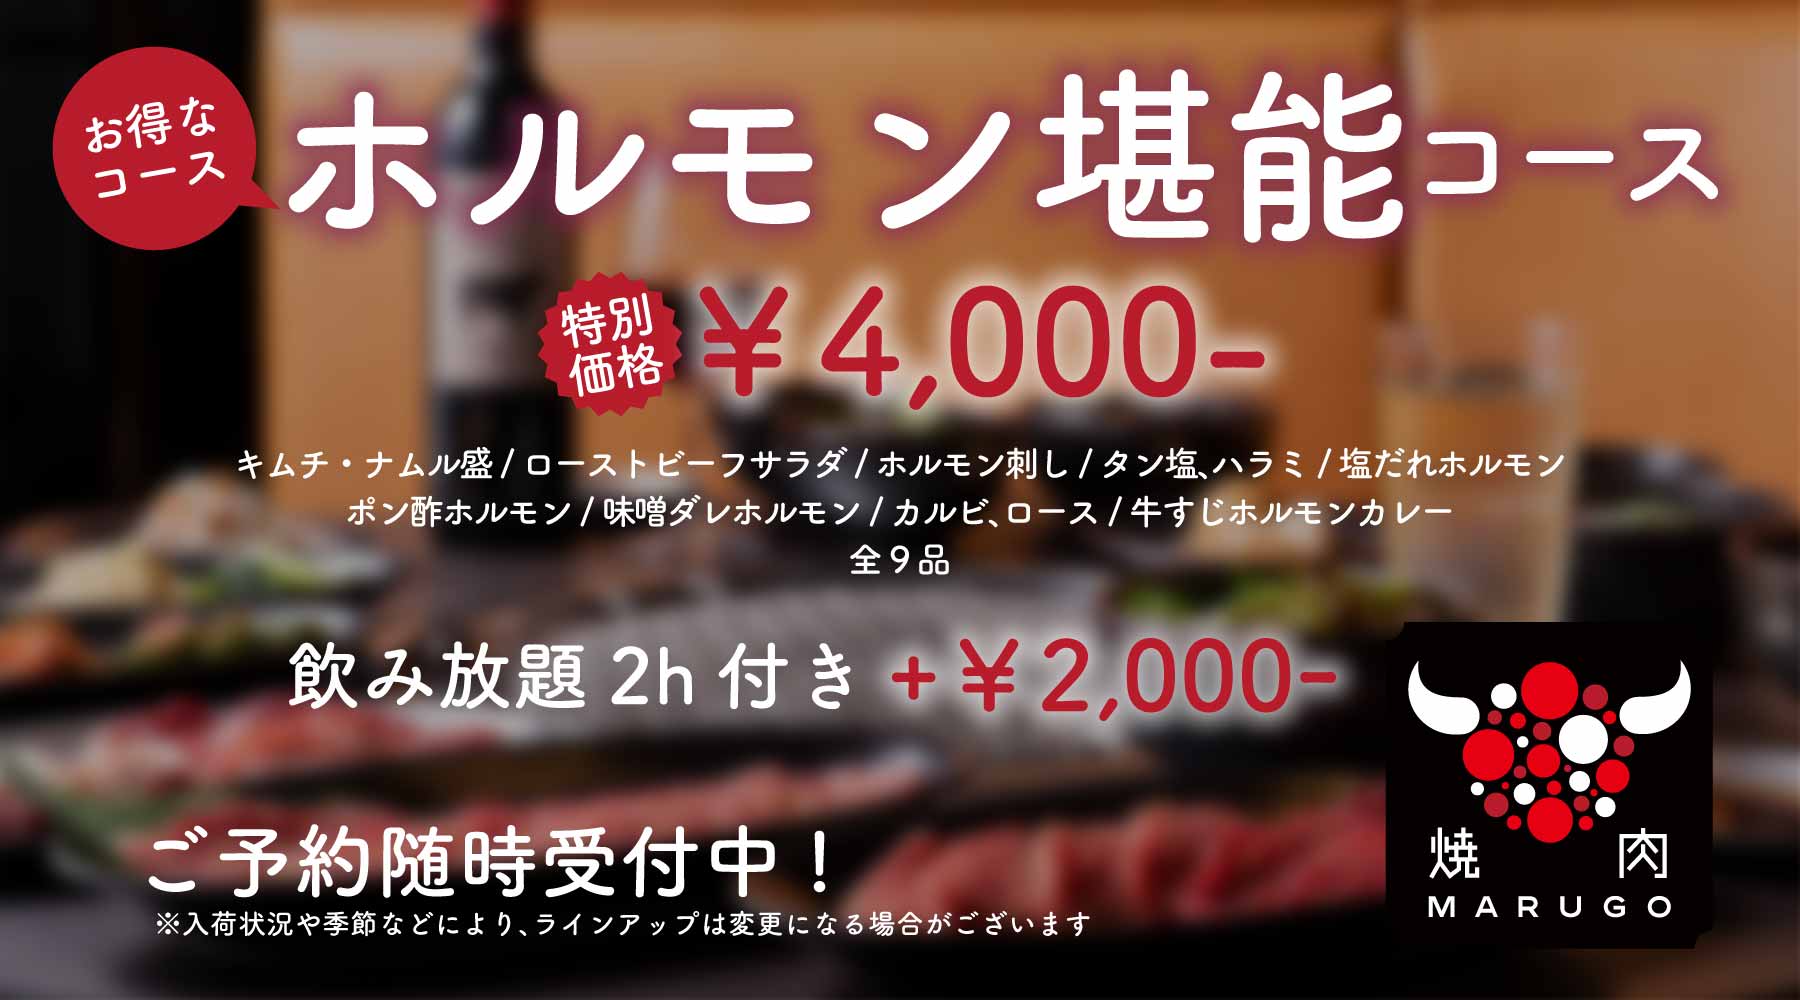 お得な「ホルモン堪能コース」¥4,000-